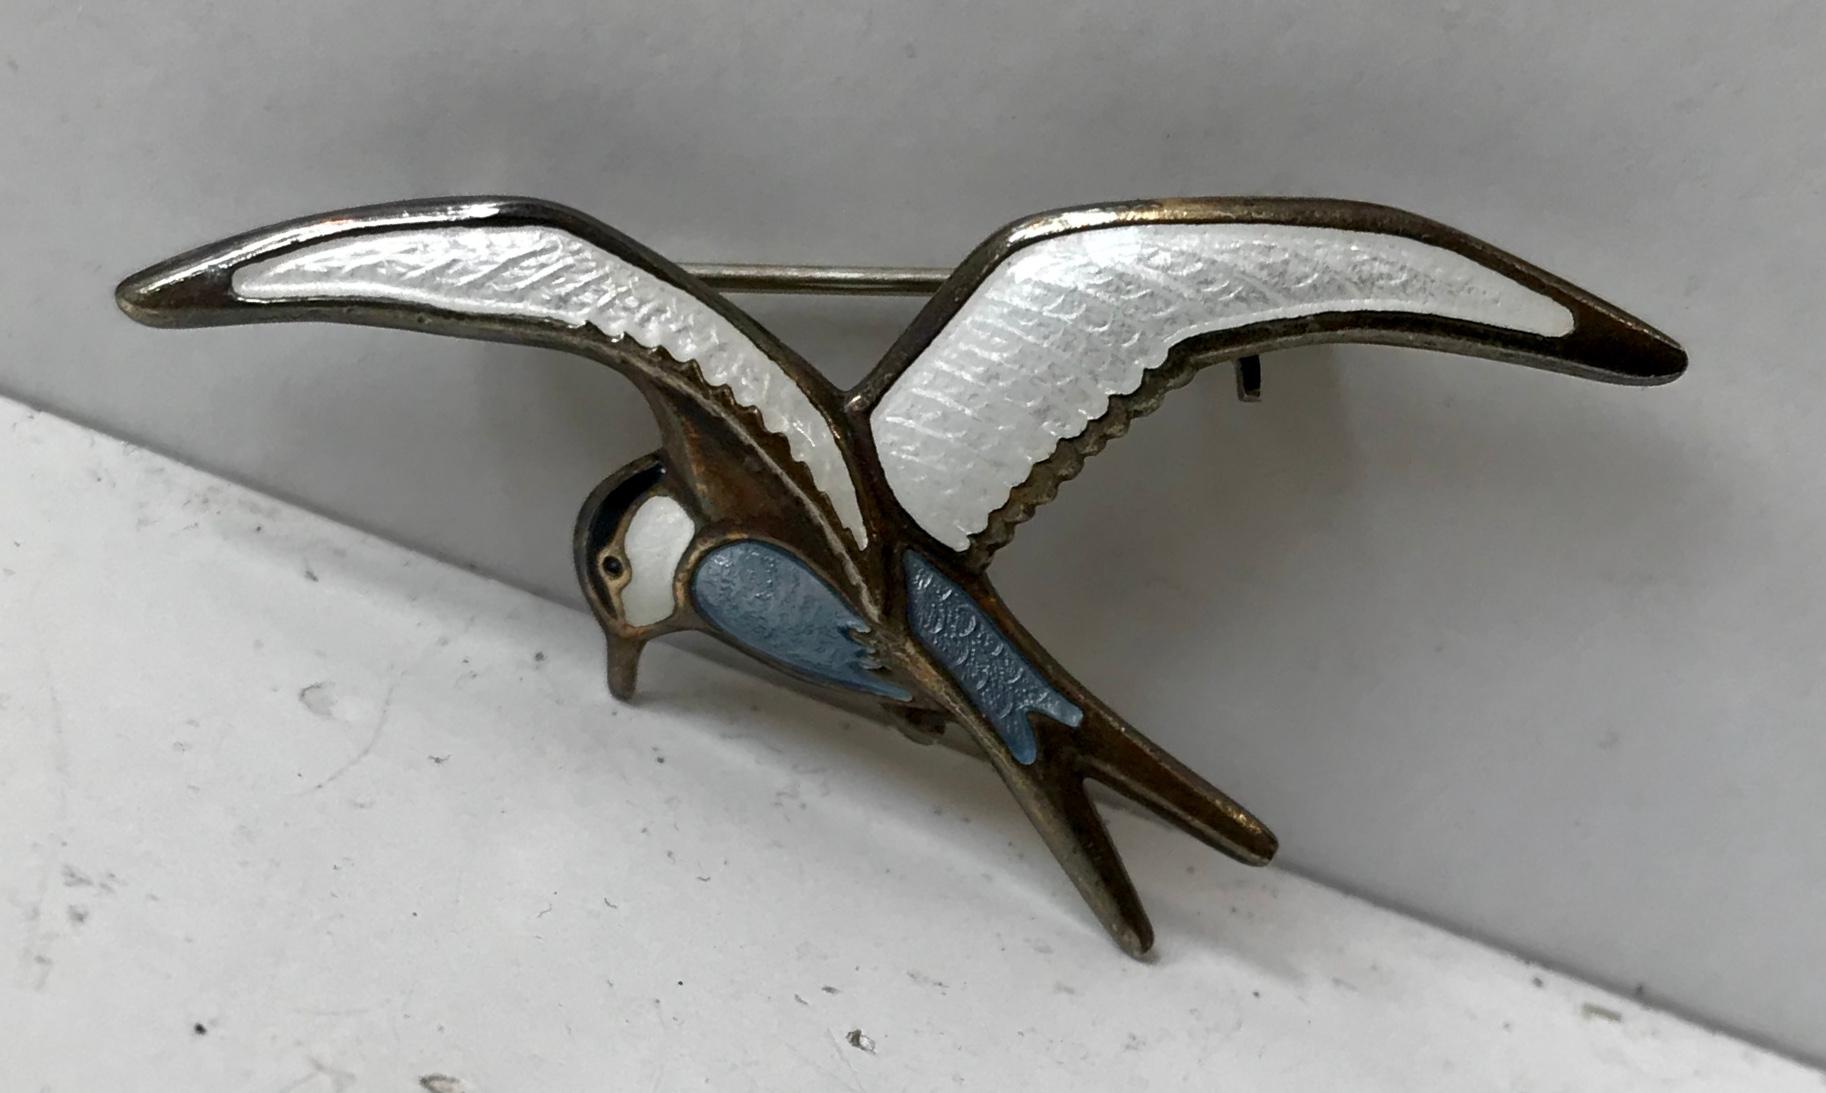 antique bird brooch